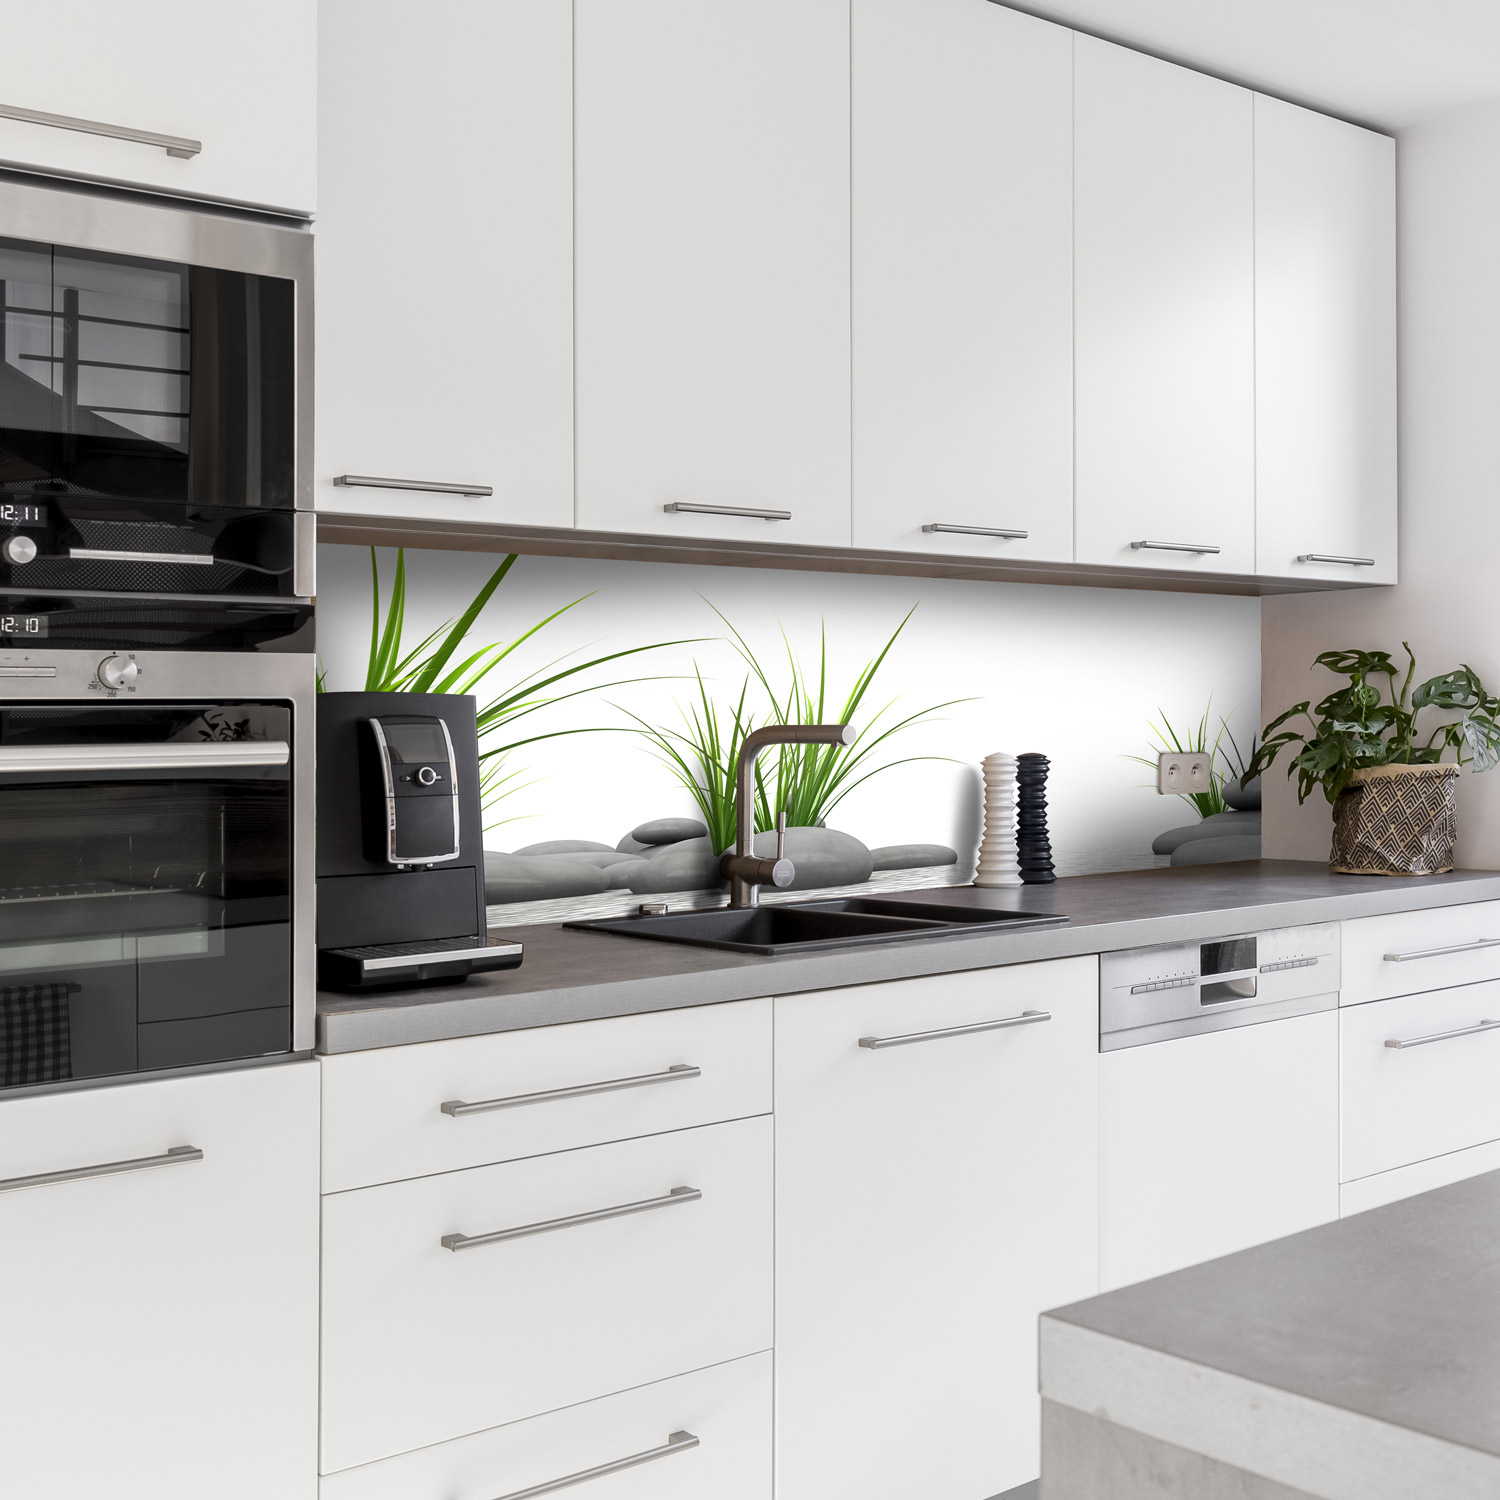 Küchenrückwand mit Zen V1 Motiv als Fliesenersatz und Spritzschutz